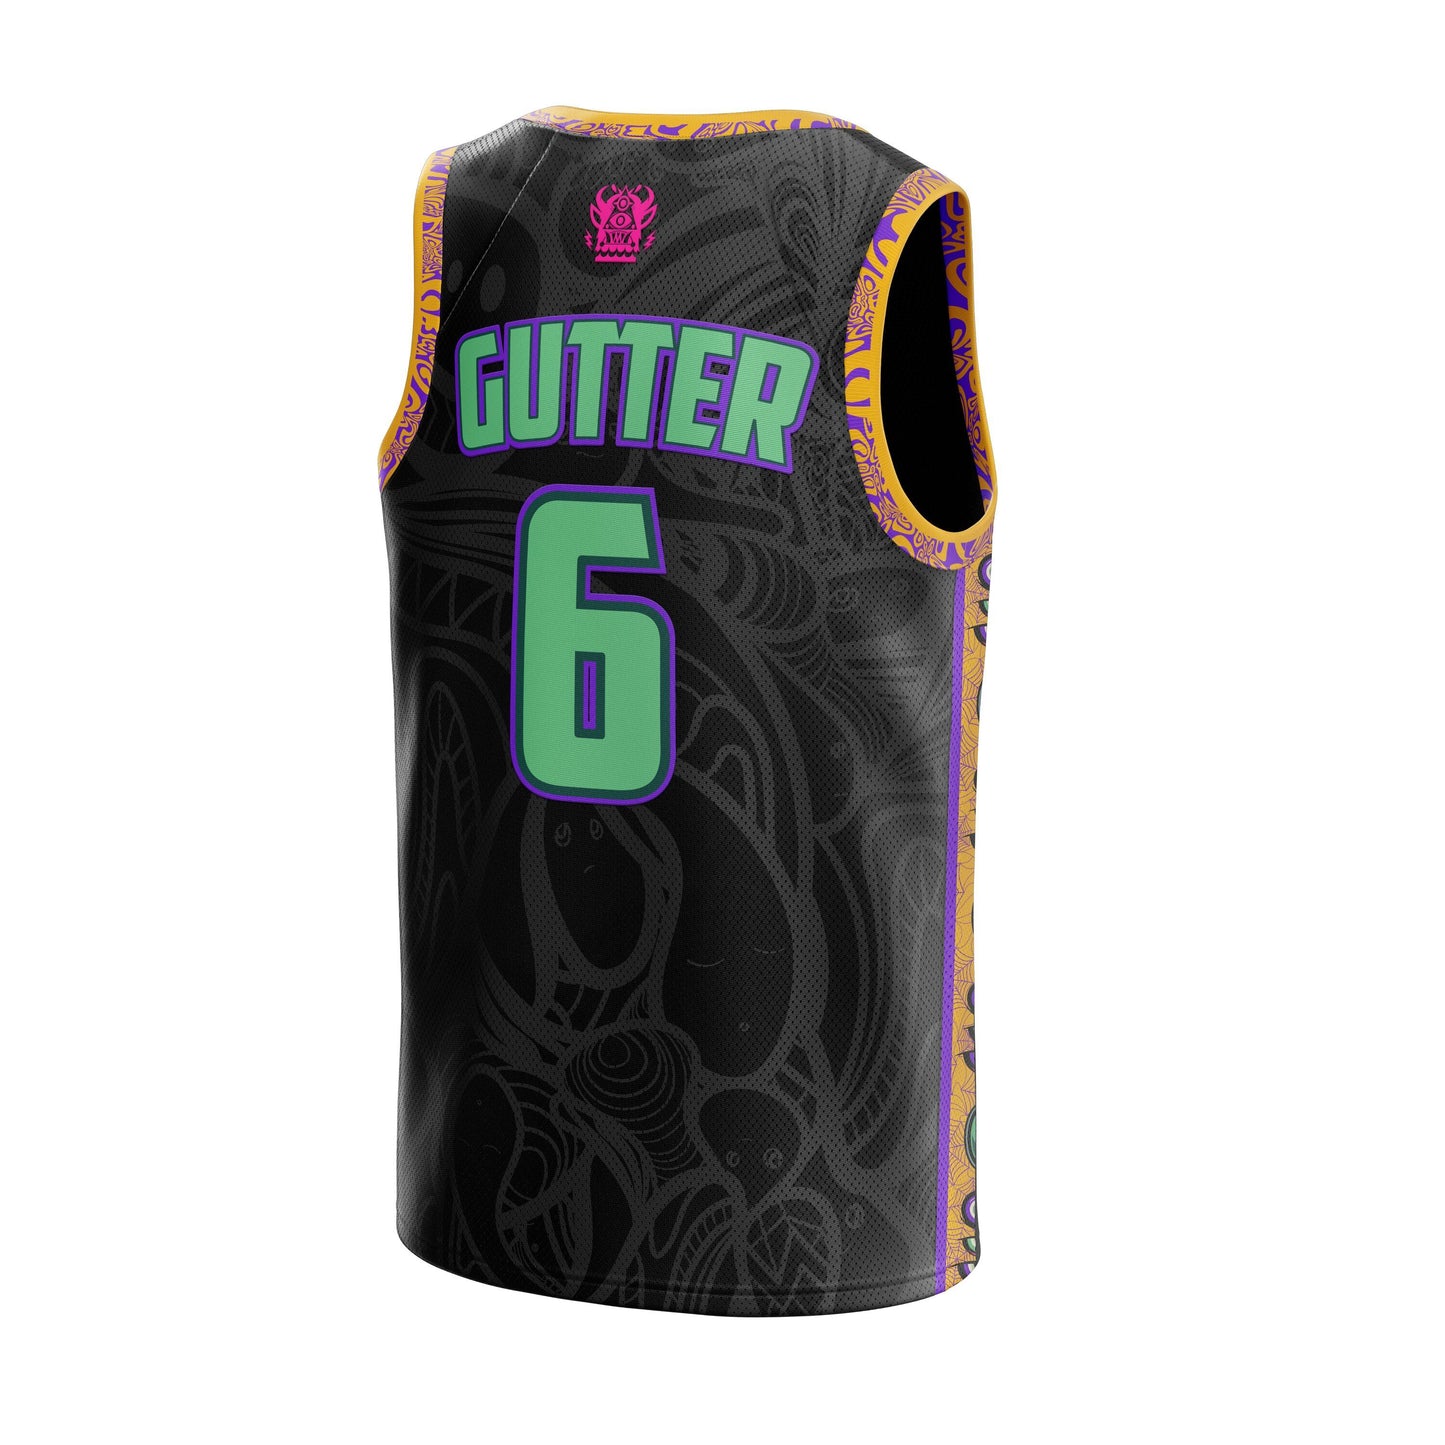 Gutter Music 6 Basketball Jersey